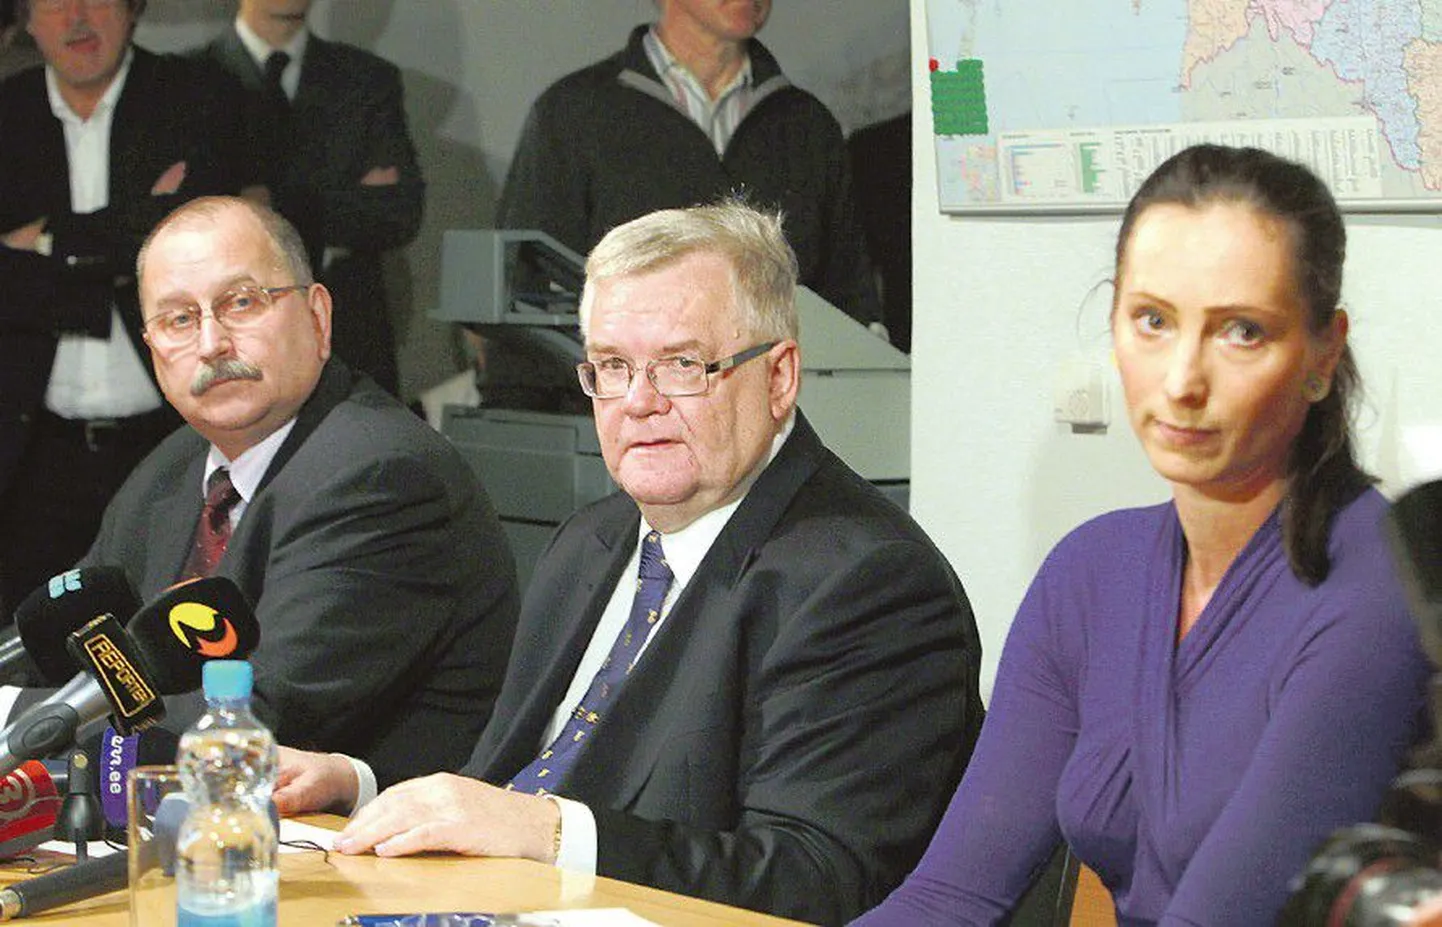 22 декабря Центристская партия объявила о создании «комиссии правды», которая должна была разобраться со скандалом вокруг Эдгара Сависаара. В комиссию вошли Калле Кландорф (слева) как председатель комиссии и Эвелин Сепп (справа).